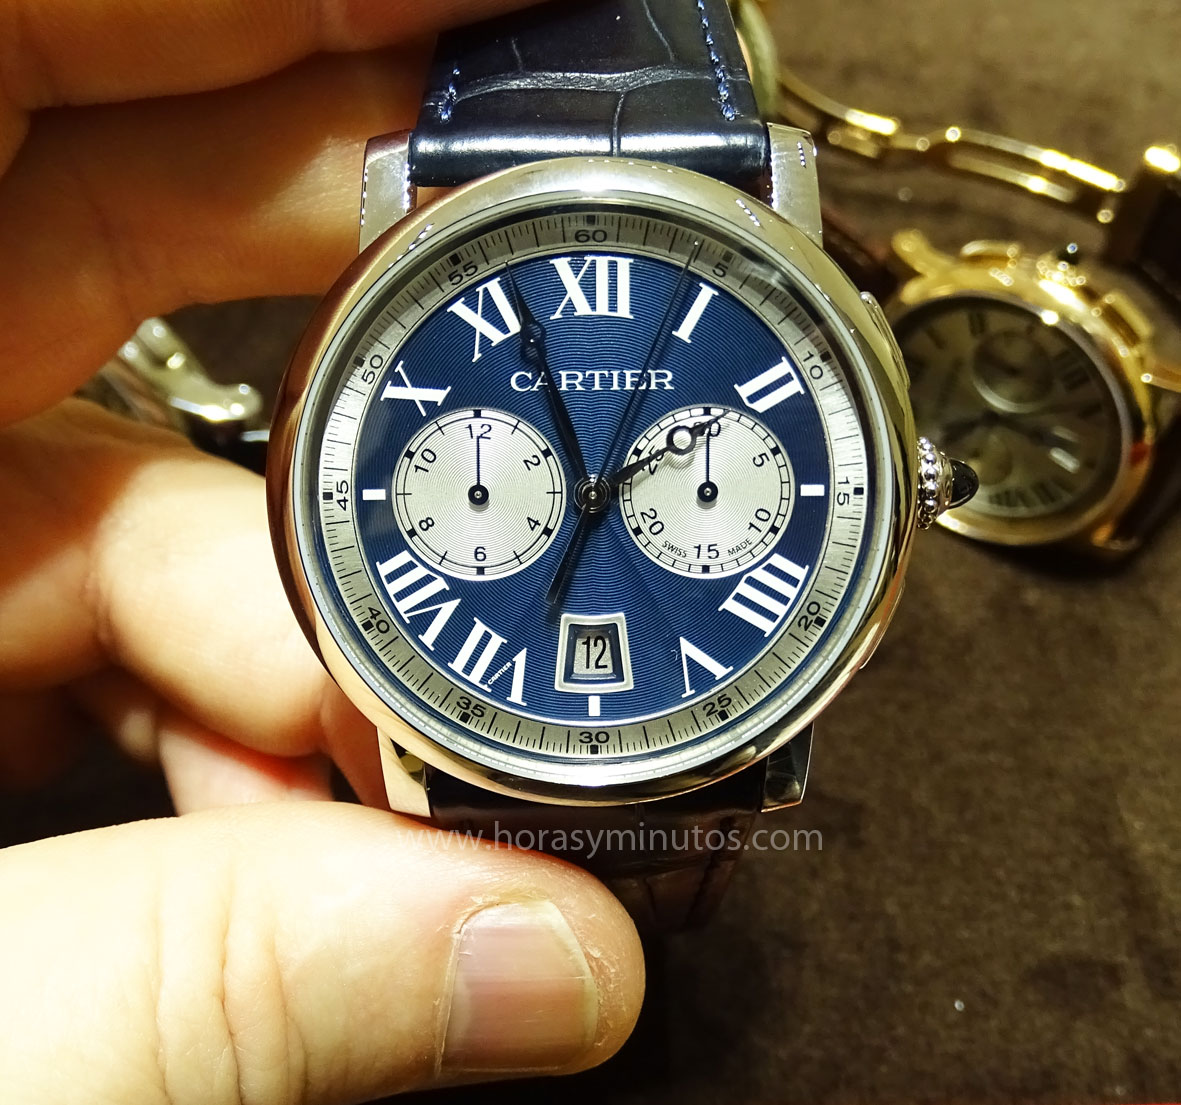 Rotonde de Cartier Chronograph edición boutique